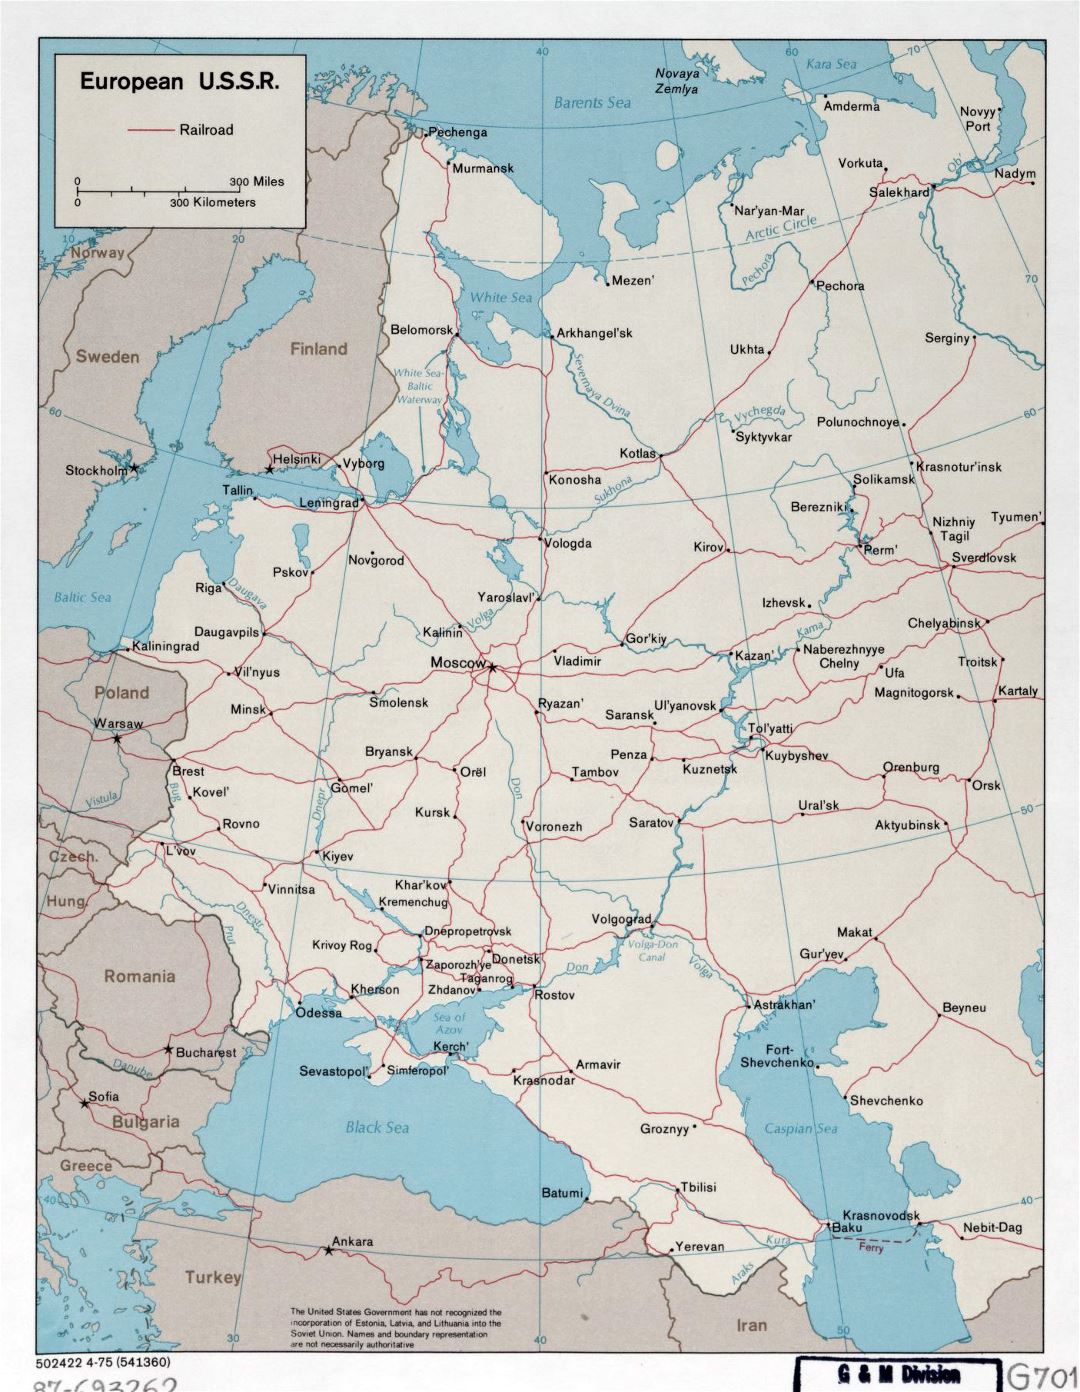 Большая детальная карта европейской части СССР с железными дорогами - 1975